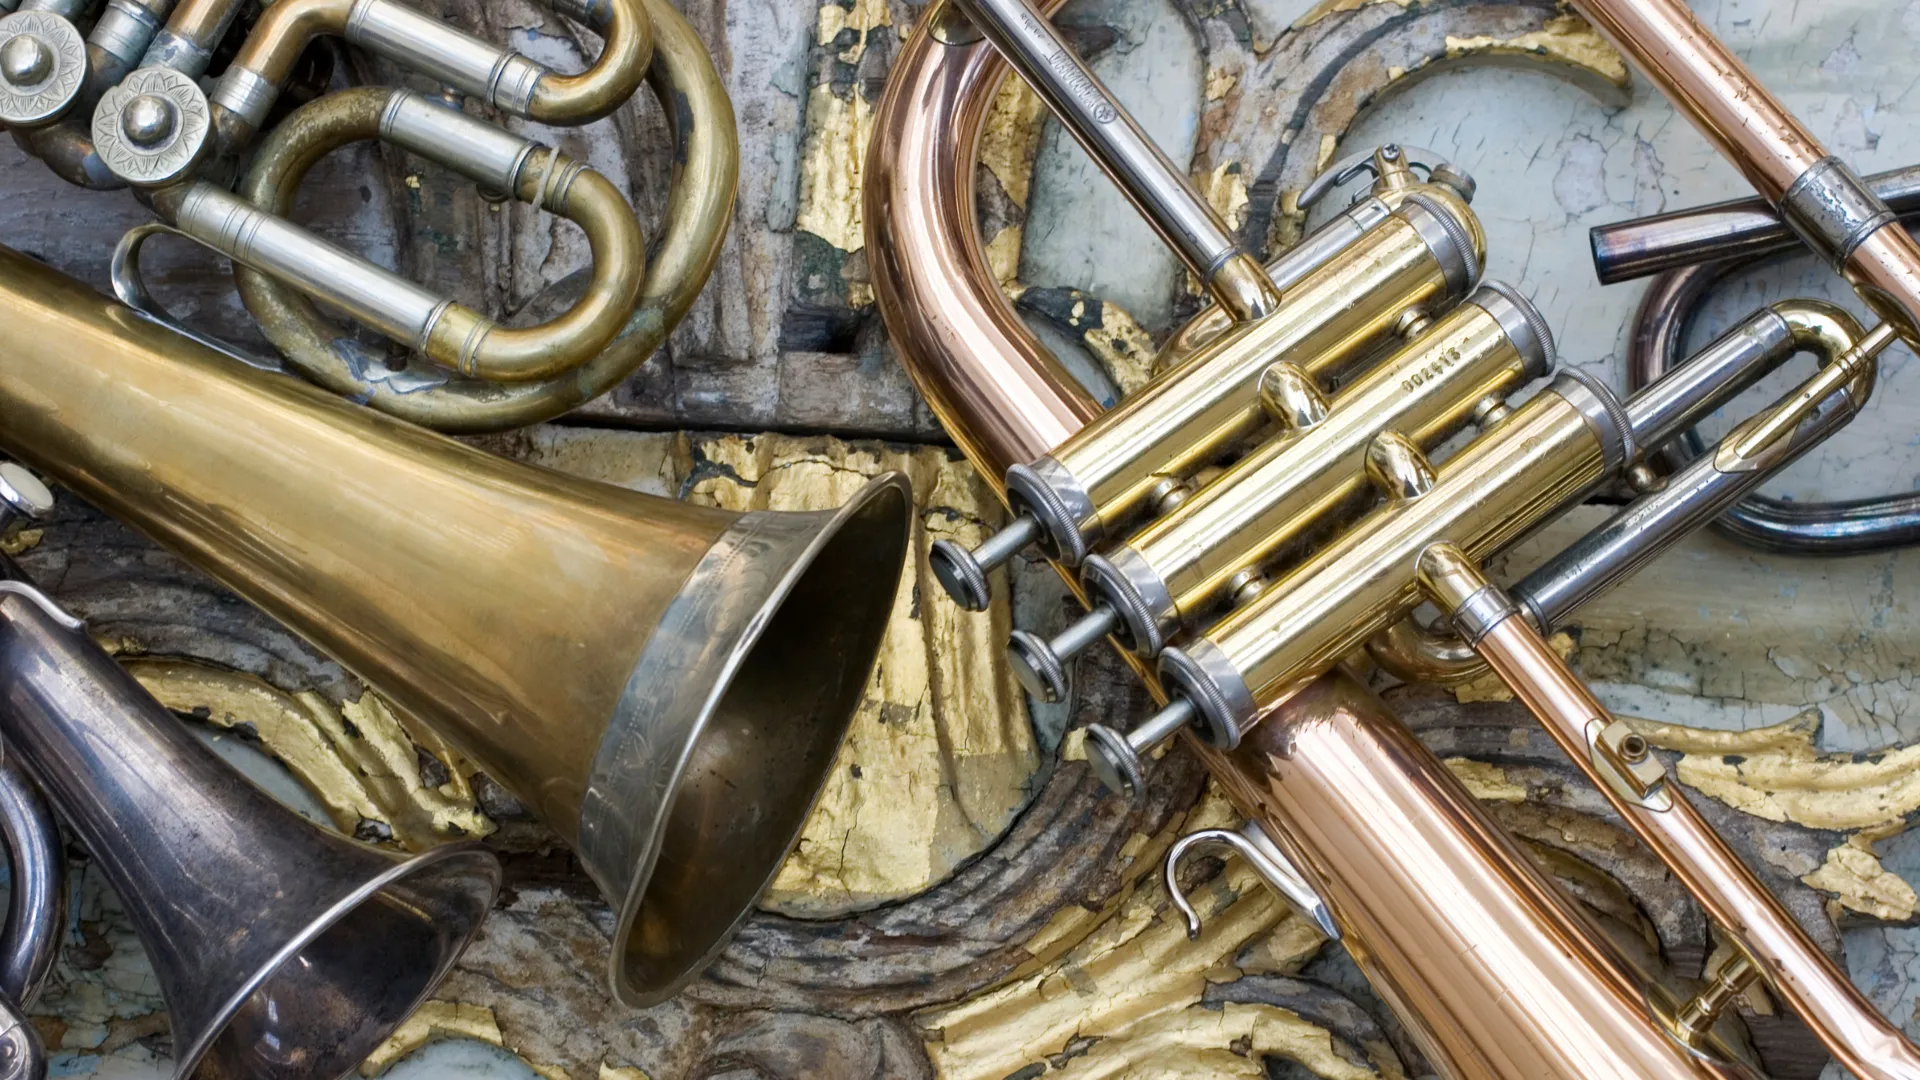 Brass trumpet instrument, Trumpet, Trumpet, brass Instrument